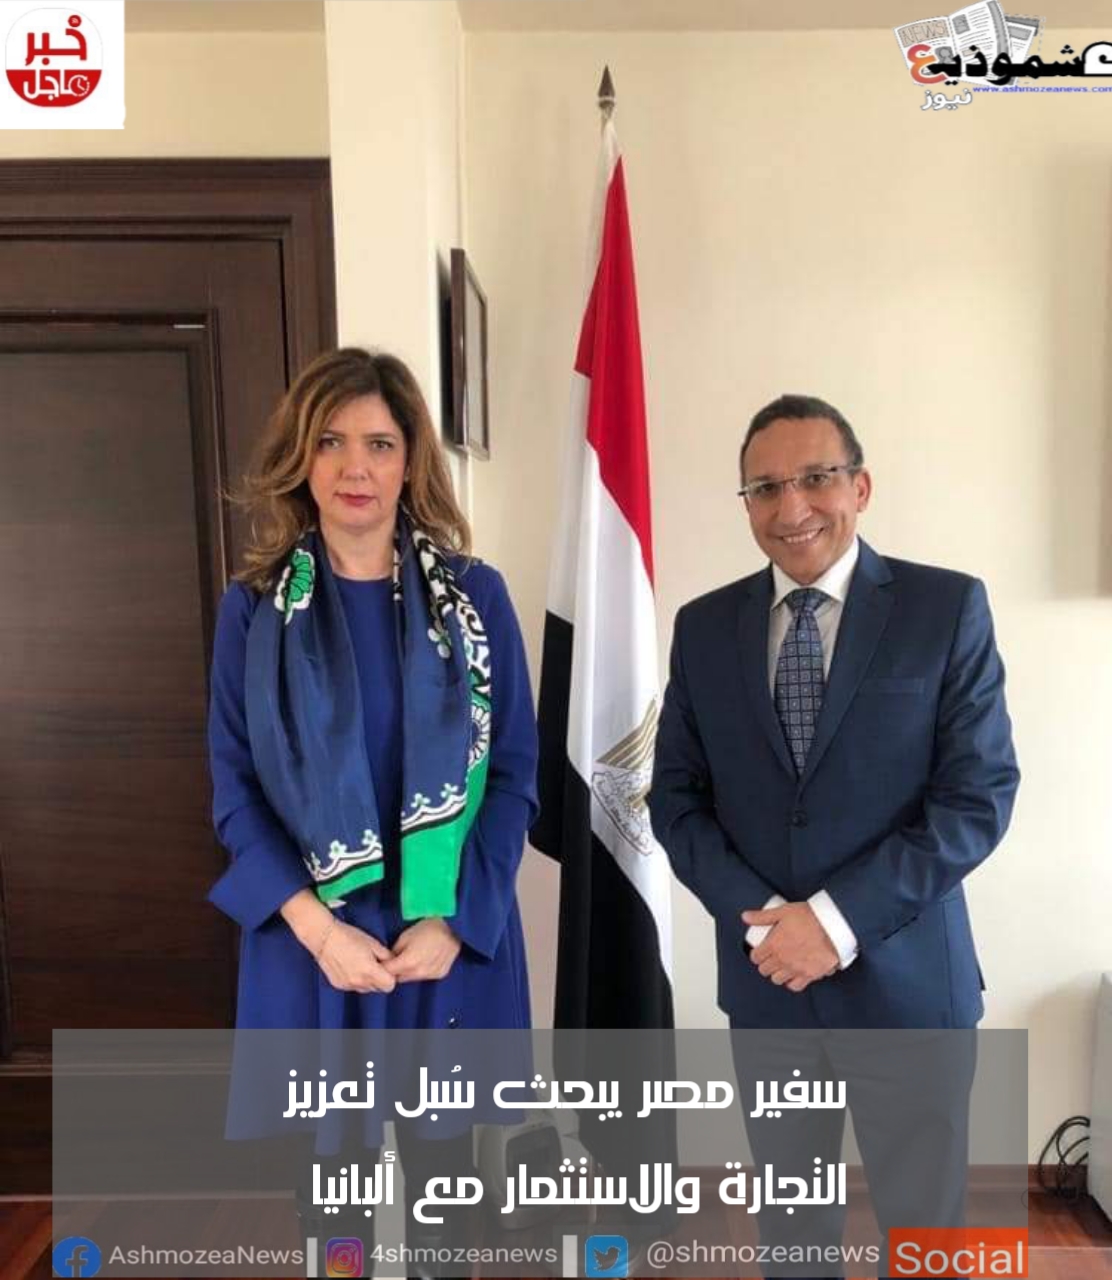 سفير مصر يبحث سُبل تعزيز التجارة والاستثمار مع ألبانيا